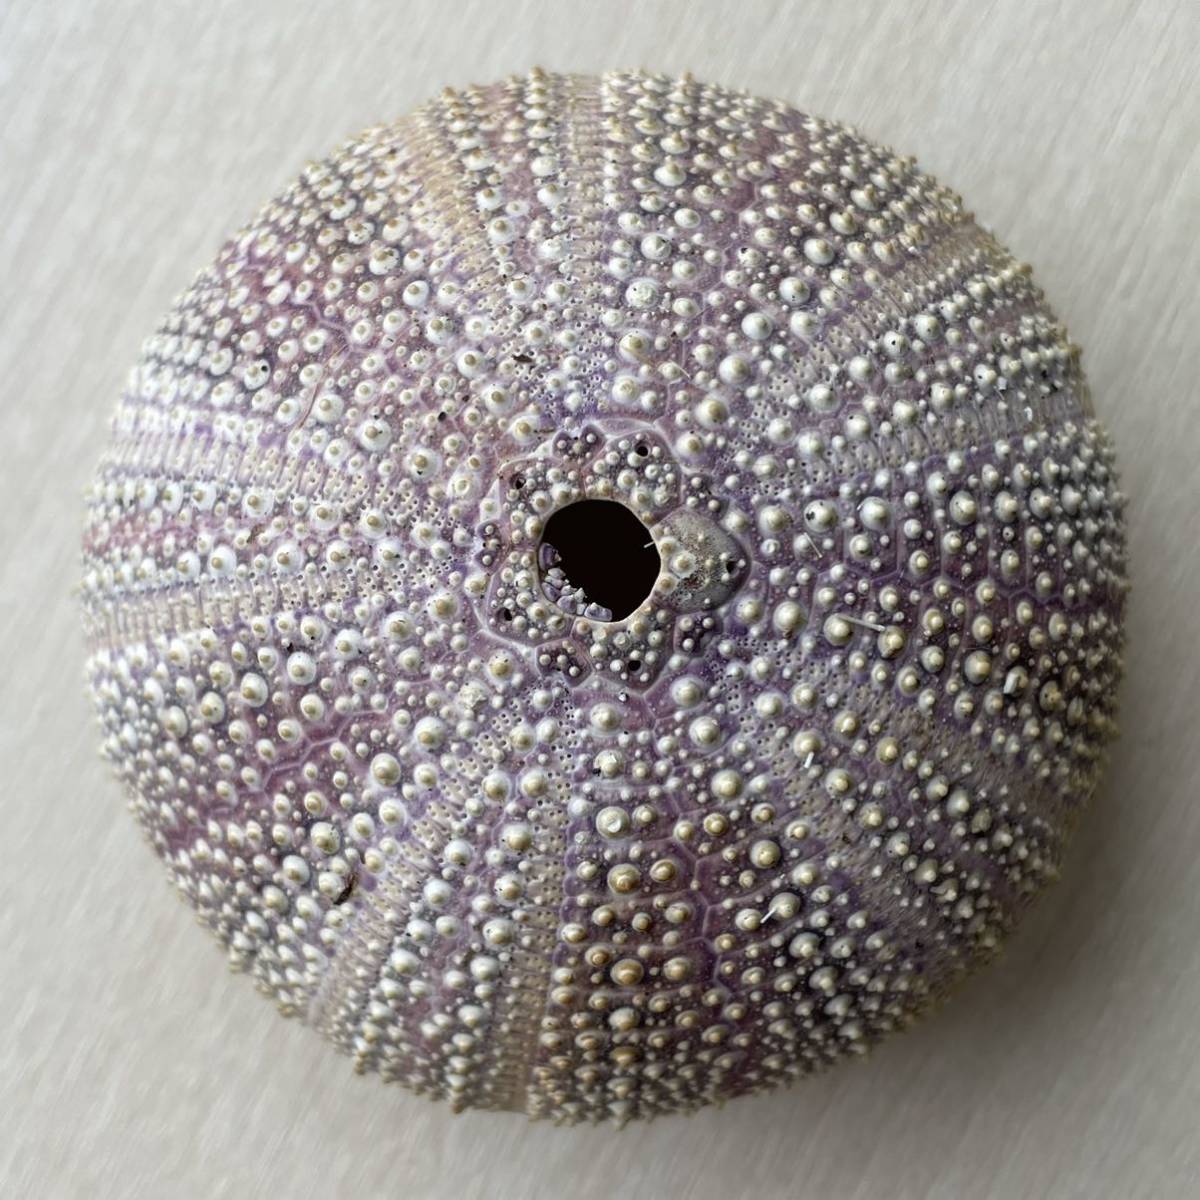 ヨーロッパオオウニ ④ ウニ ウニ殻 レインボーウニ 貝殻 貝殻標本 海 